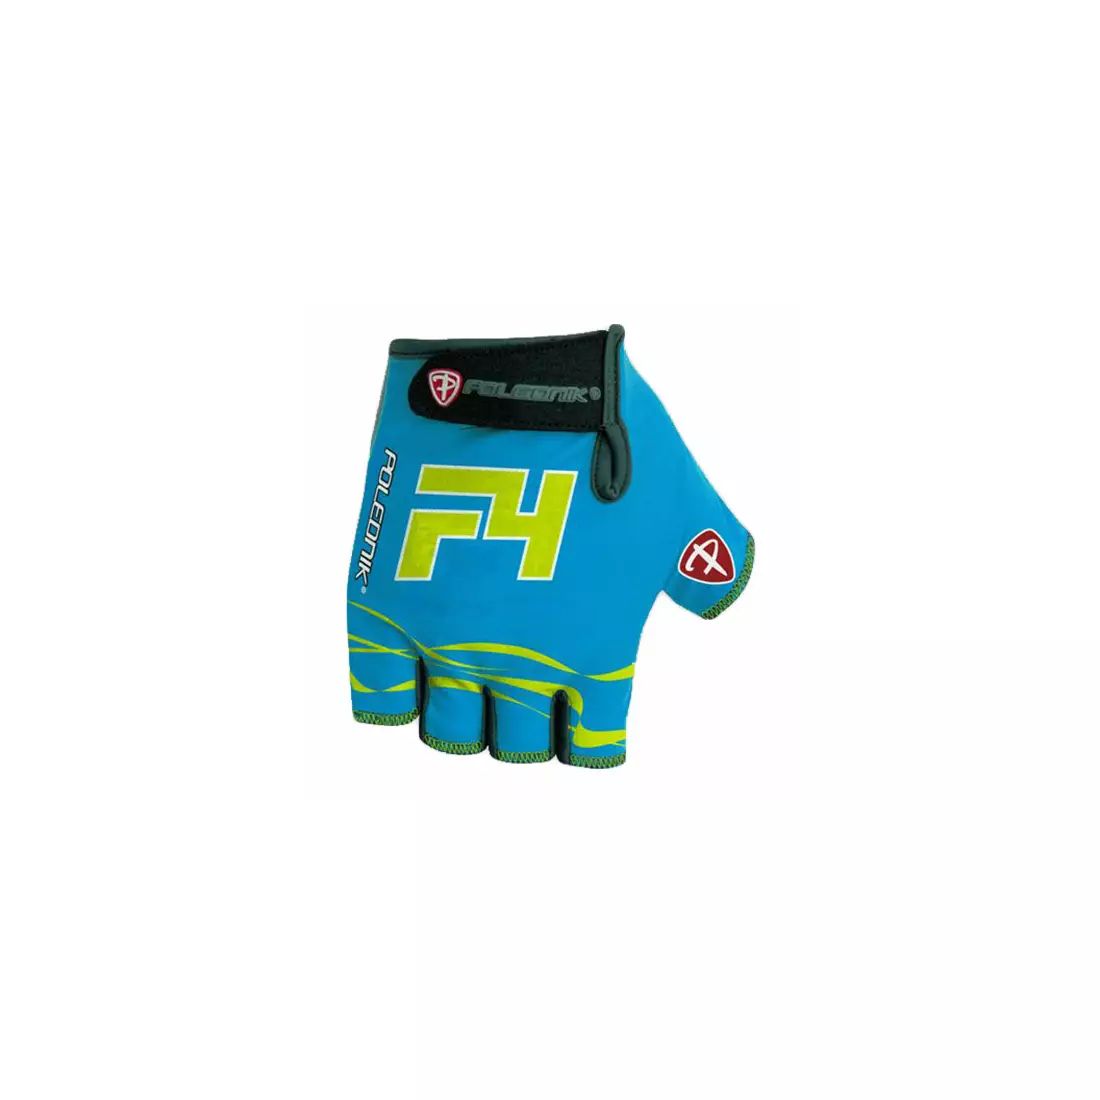 Mănuși POLEDNIK F4 NEW15, culoare: albastru